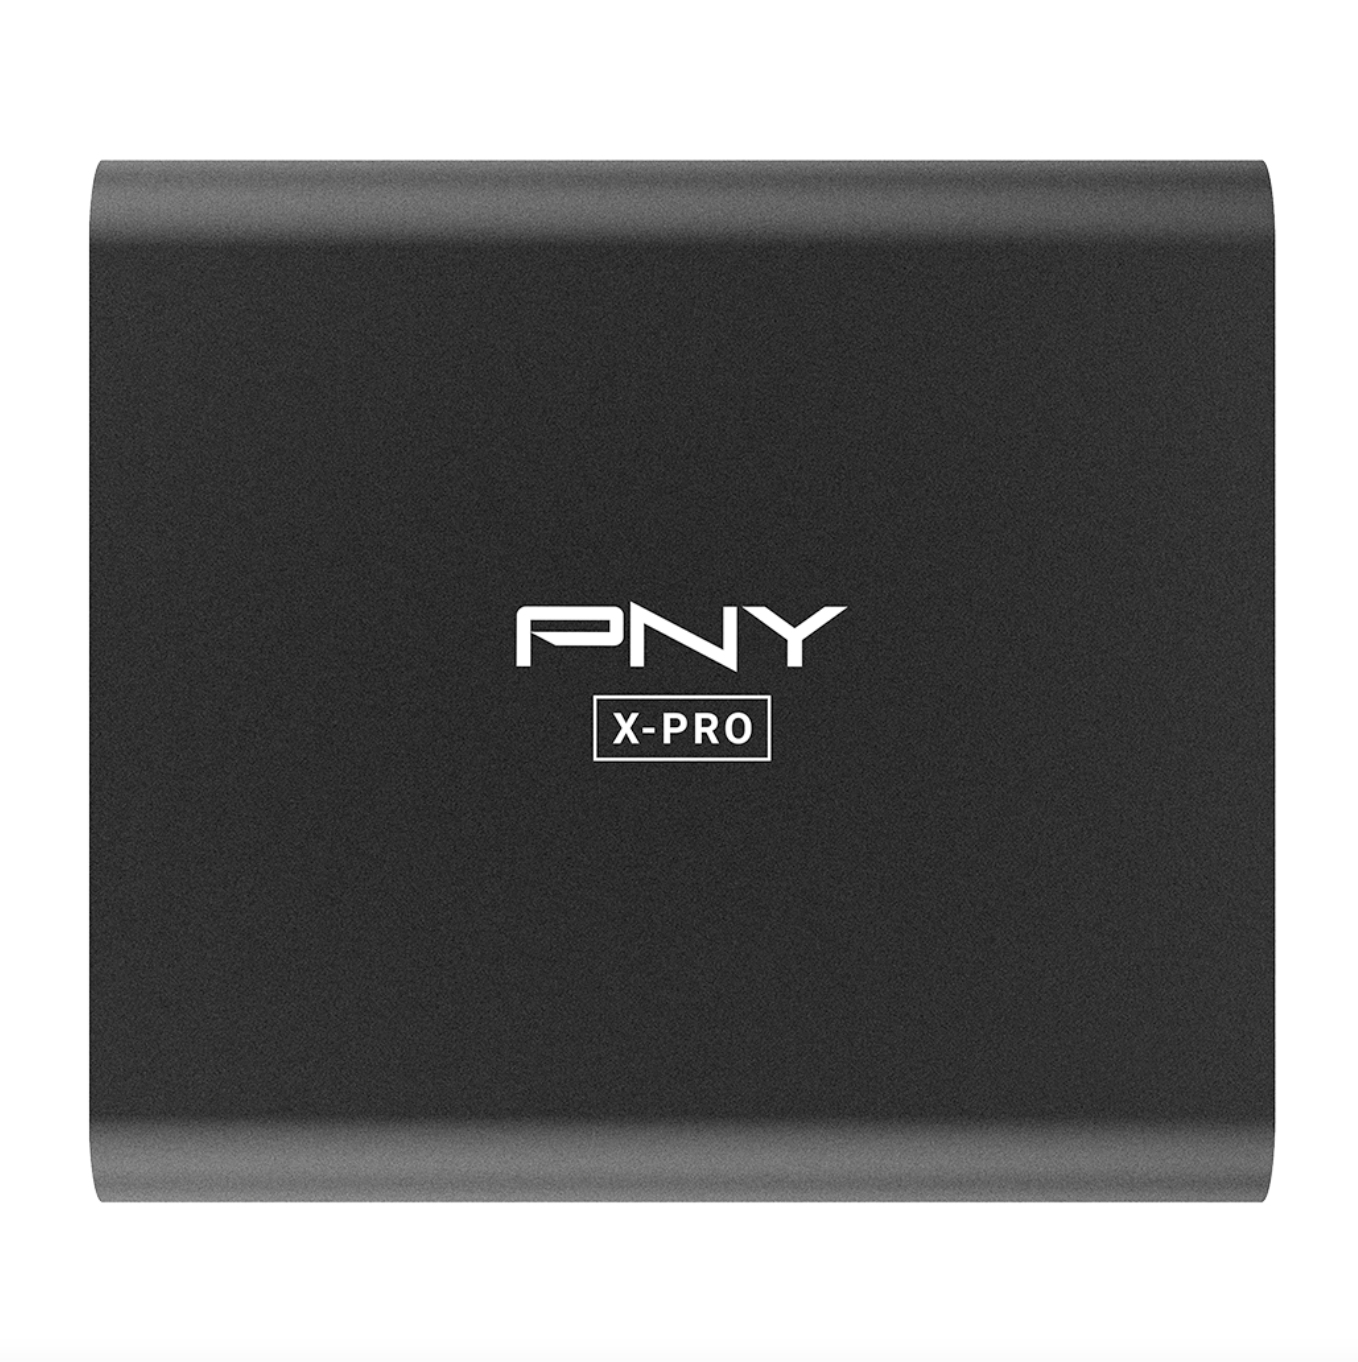 PNY X-PRO - SSD - 1 TB - extern (tragbar) - USB